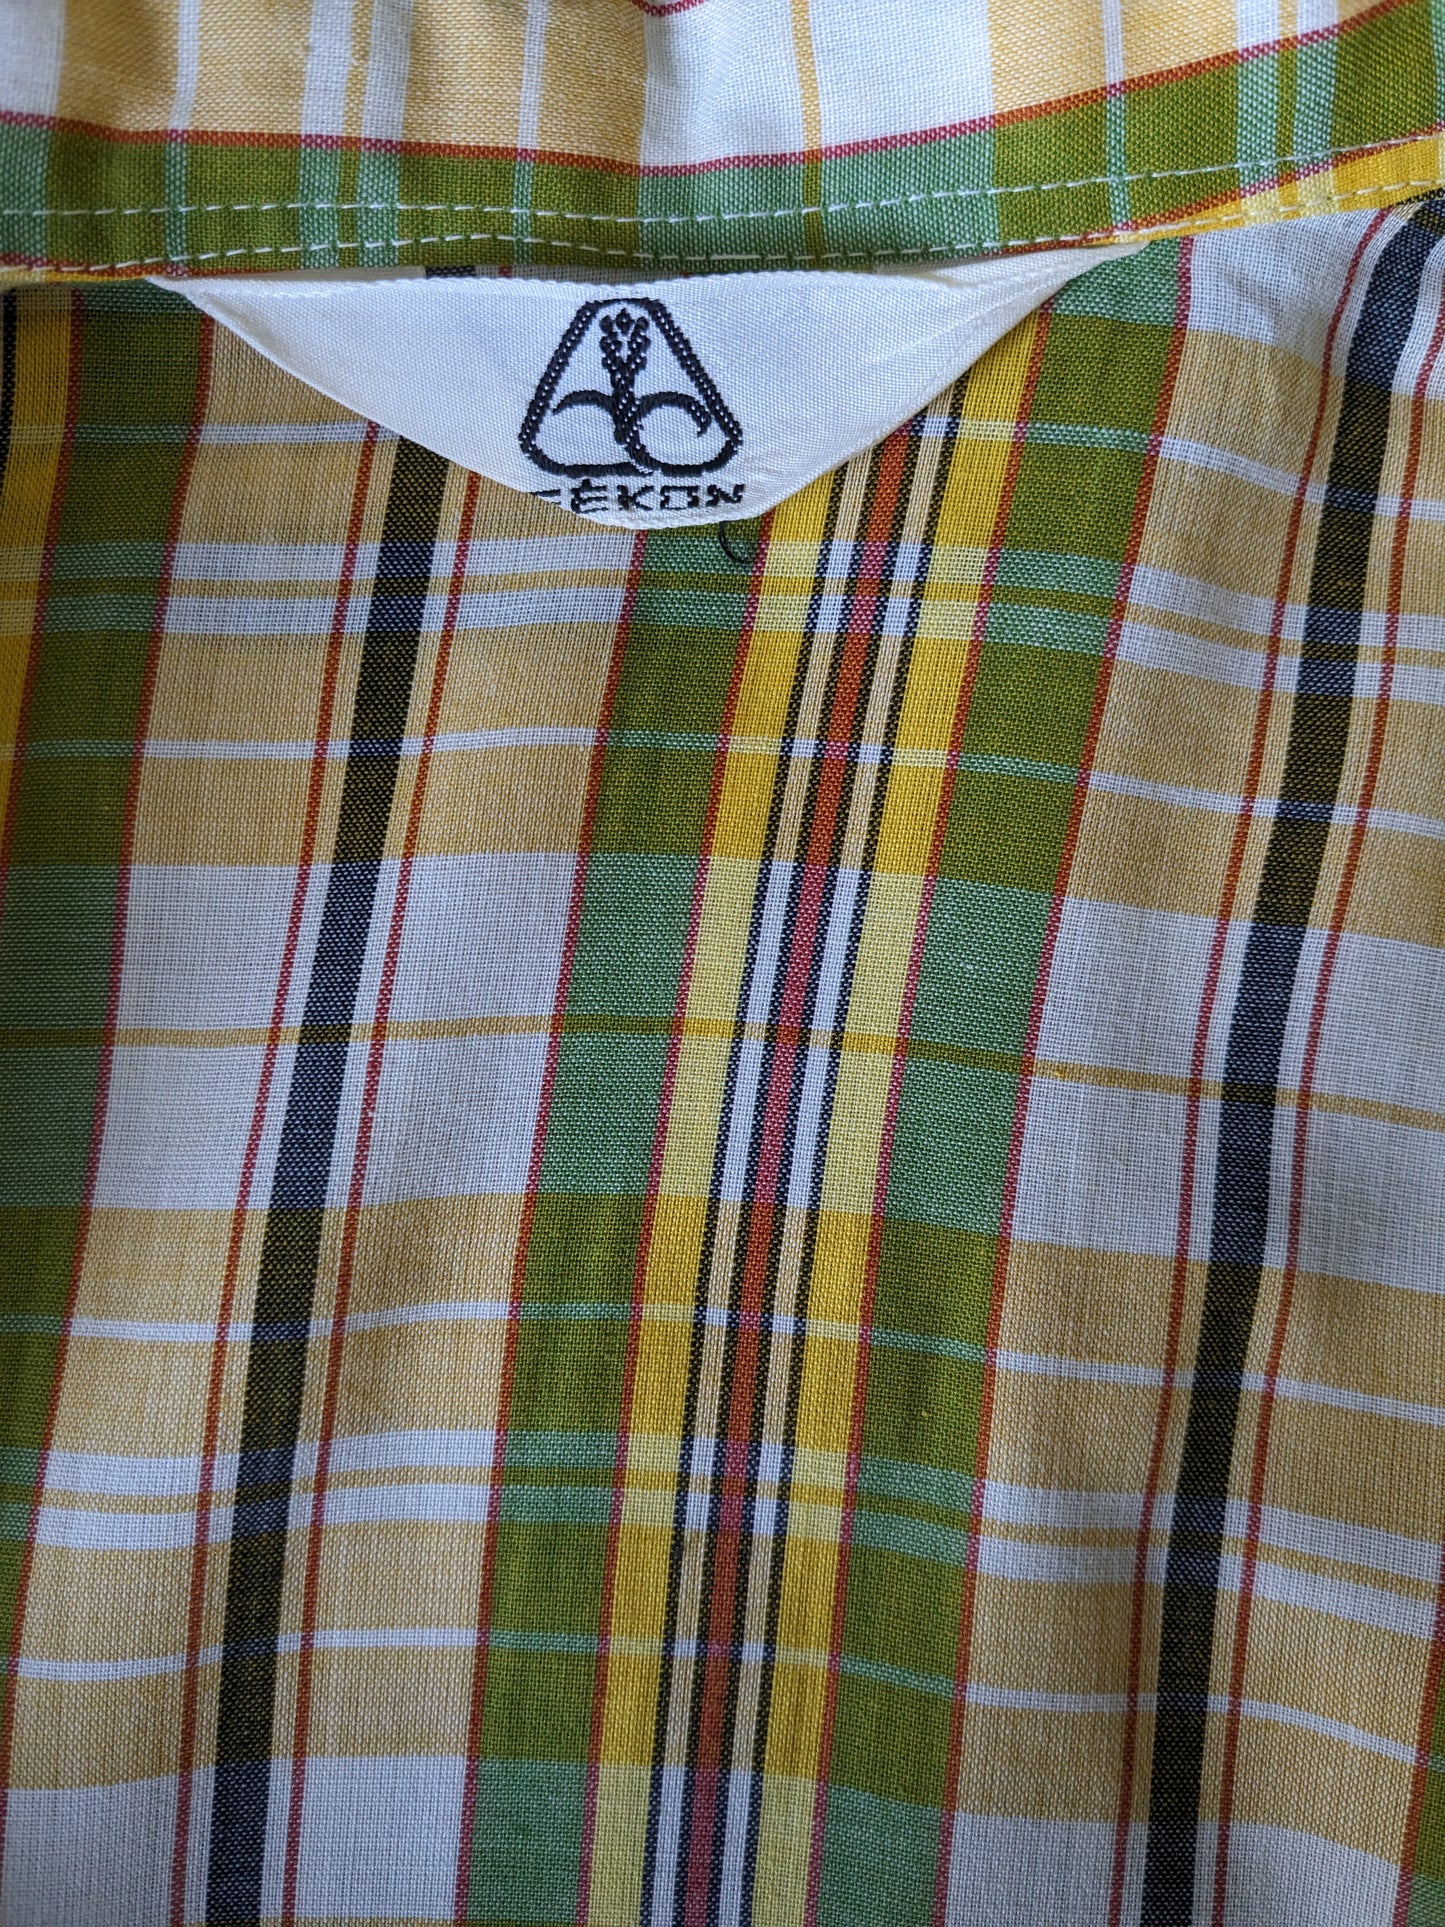 Camicia Fekon vintage con colletto punto. Rosso verde giallo controllato. Taglia M.